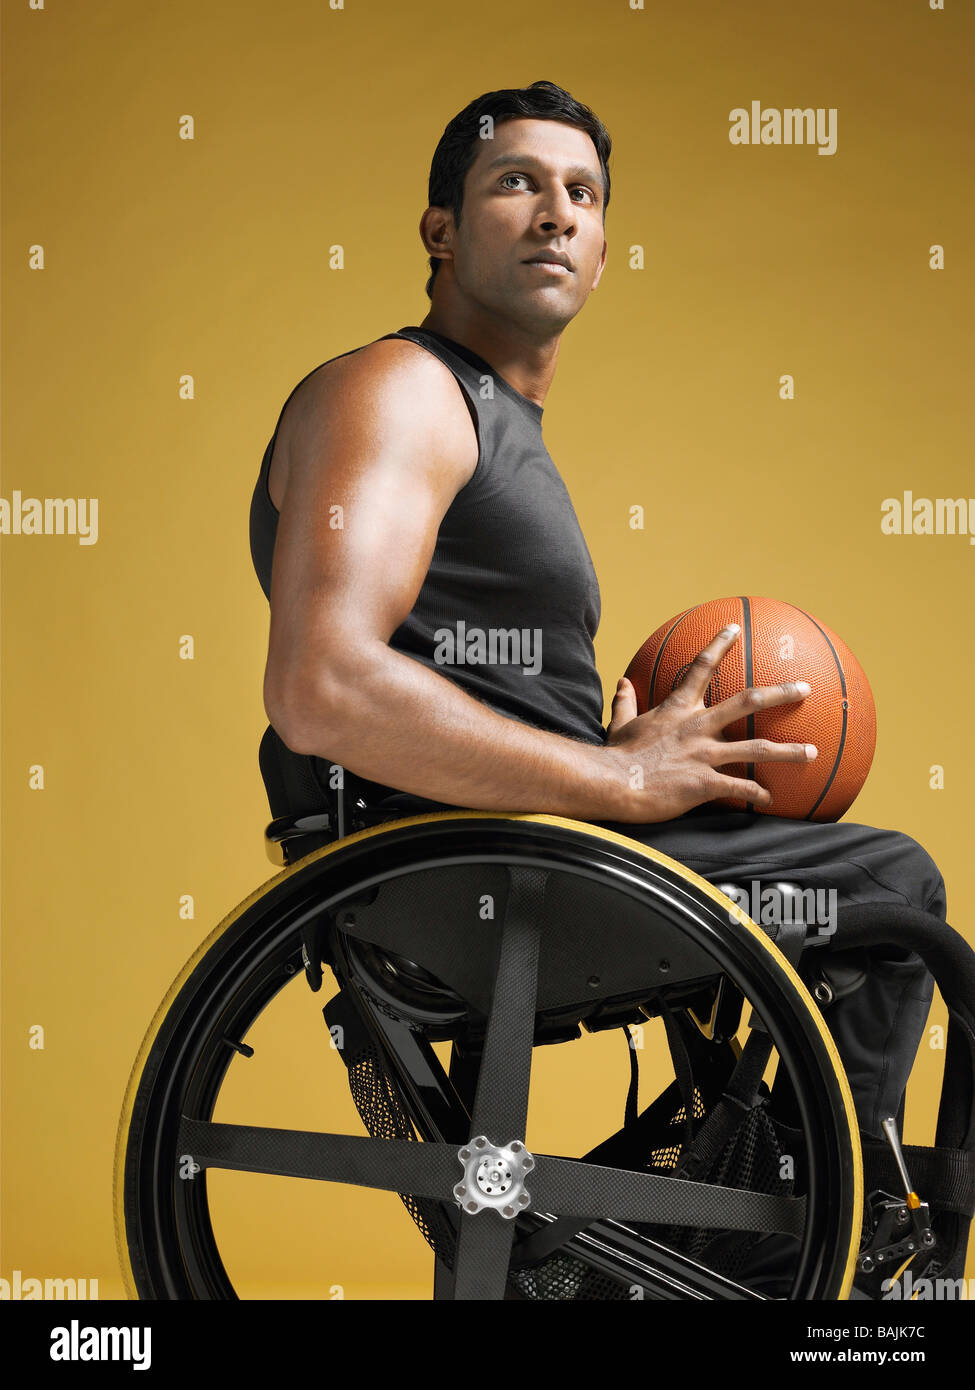 Atleta parapléjico sentado en la silla de ruedas sosteniendo el baloncesto,  vista lateral Fotografía de stock - Alamy